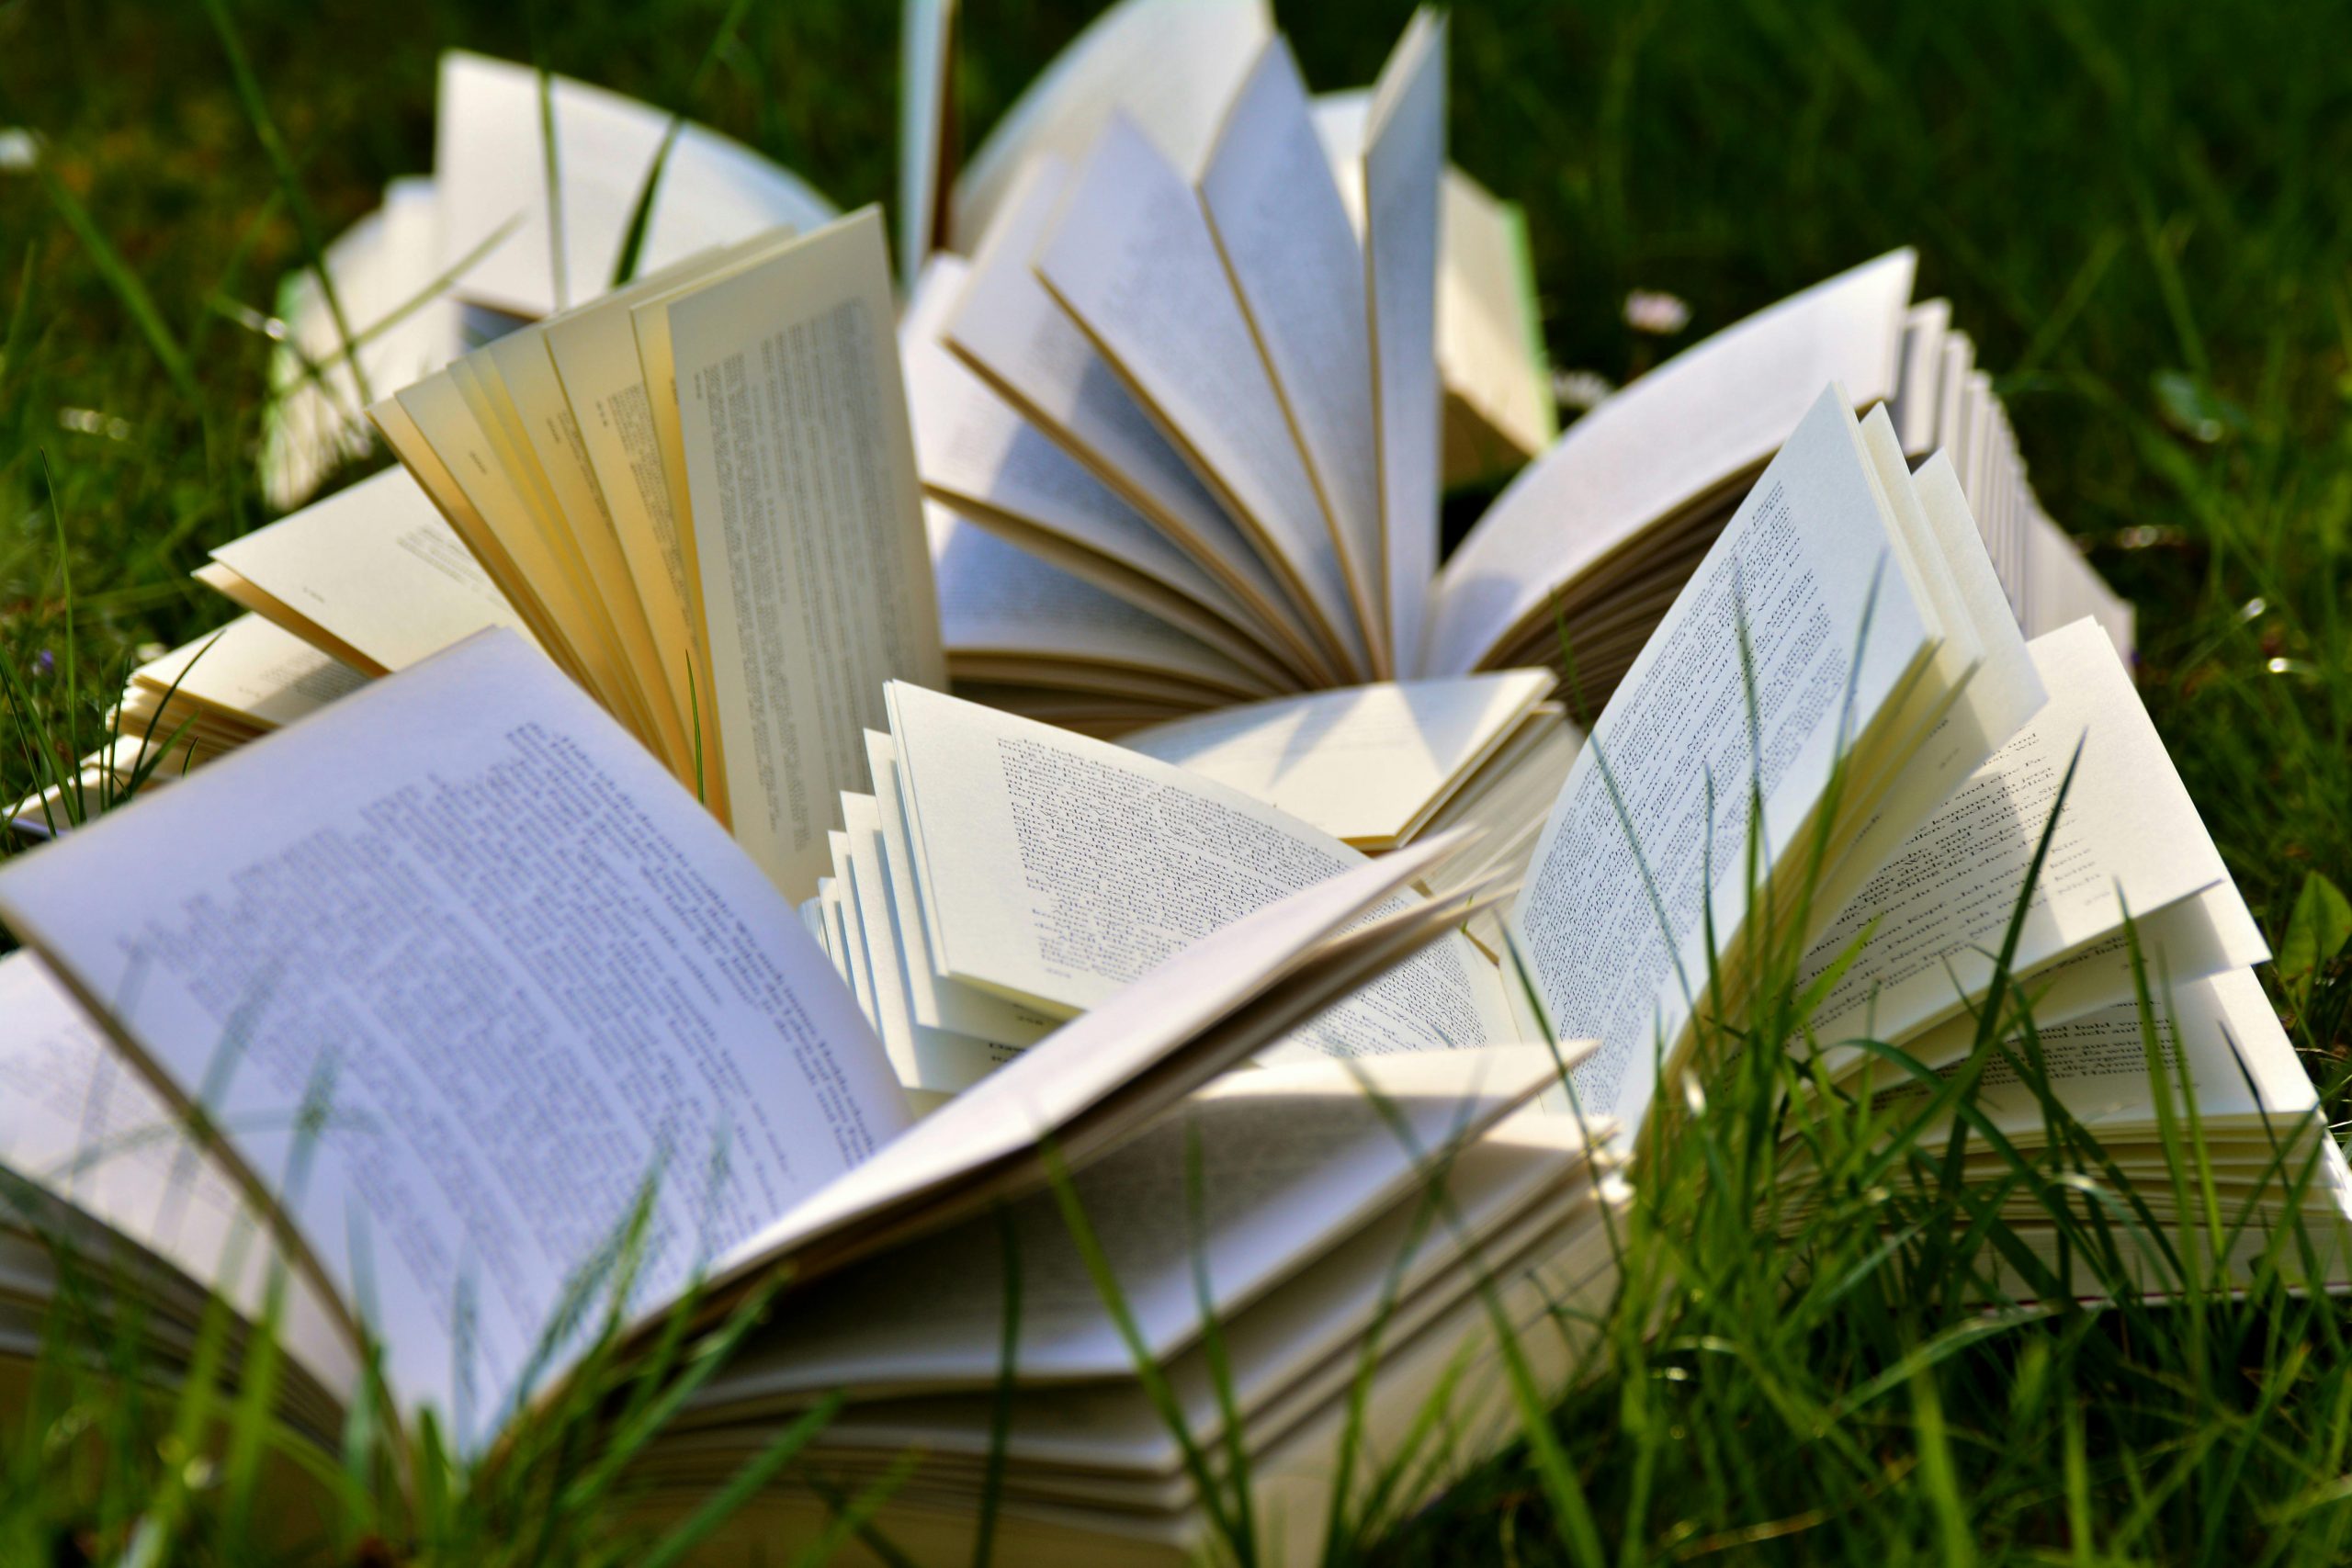 Auf einer grünen Wiese liegen mehrere aufgeschlagene Bücher.